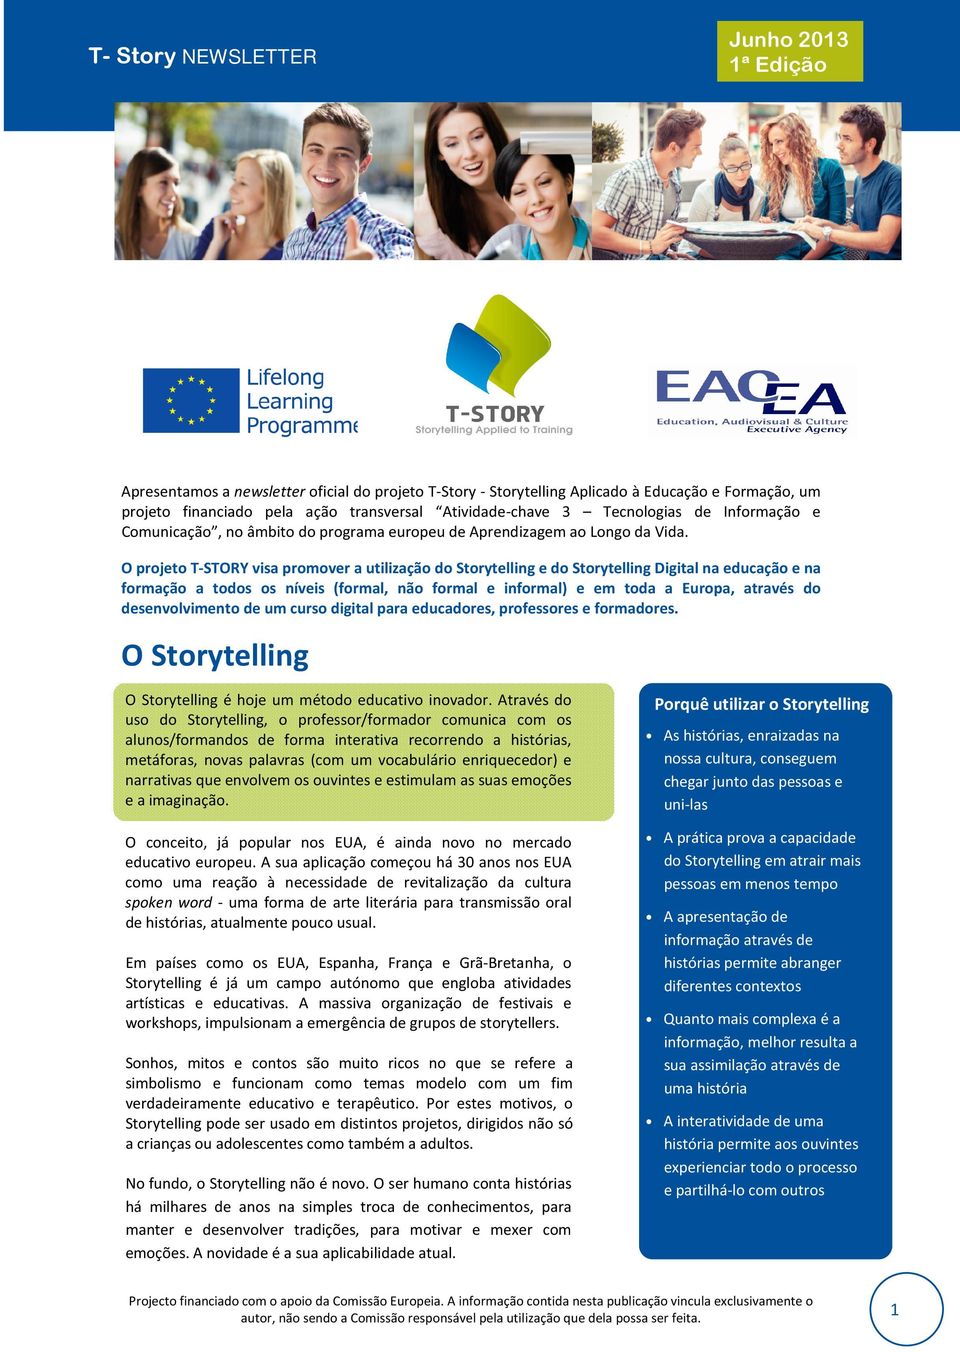 O projeto T-STORY visa promover a utilização do Storytelling e do Storytelling Digital na educação e na formação a todos os níveis (formal, não formal e informal) e em toda a Europa, através do